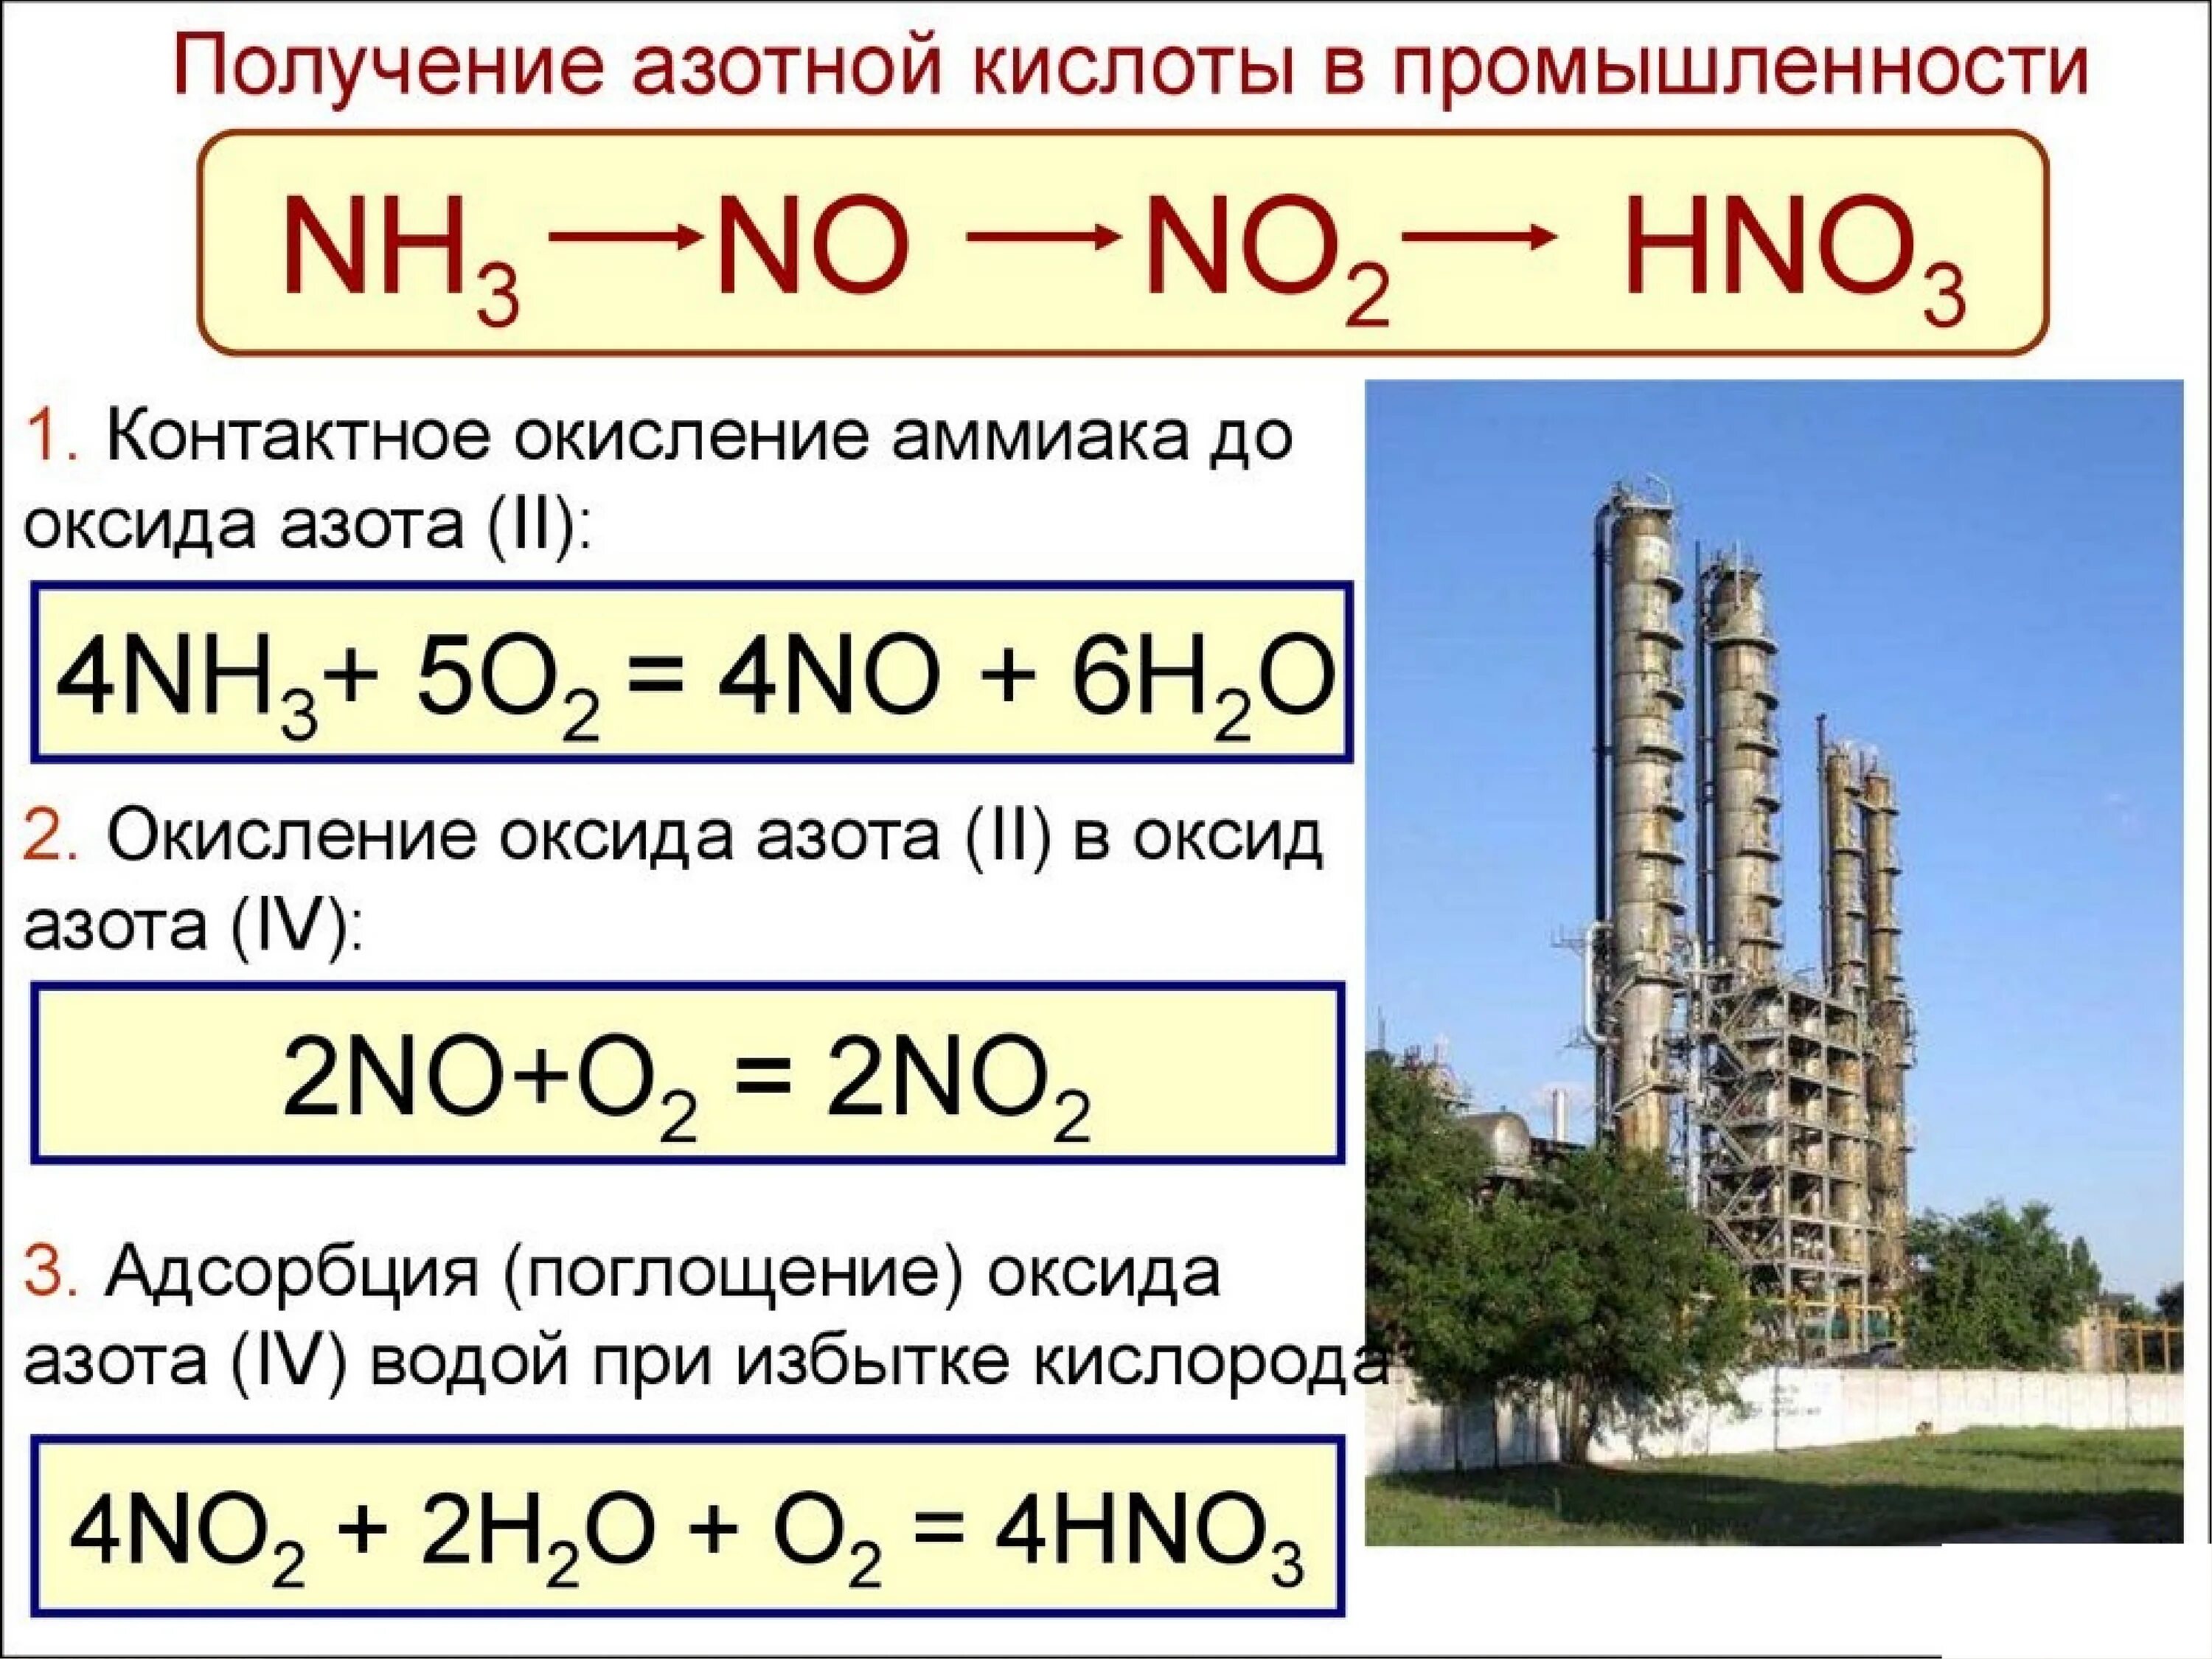 Сероводород оксид азота 4. Получение азотной кислоты из аммиака. Как из аммиака получить оксид азота 2. Как из аммиака получить азотную кислоту. Получение азотной кислоты из no2.